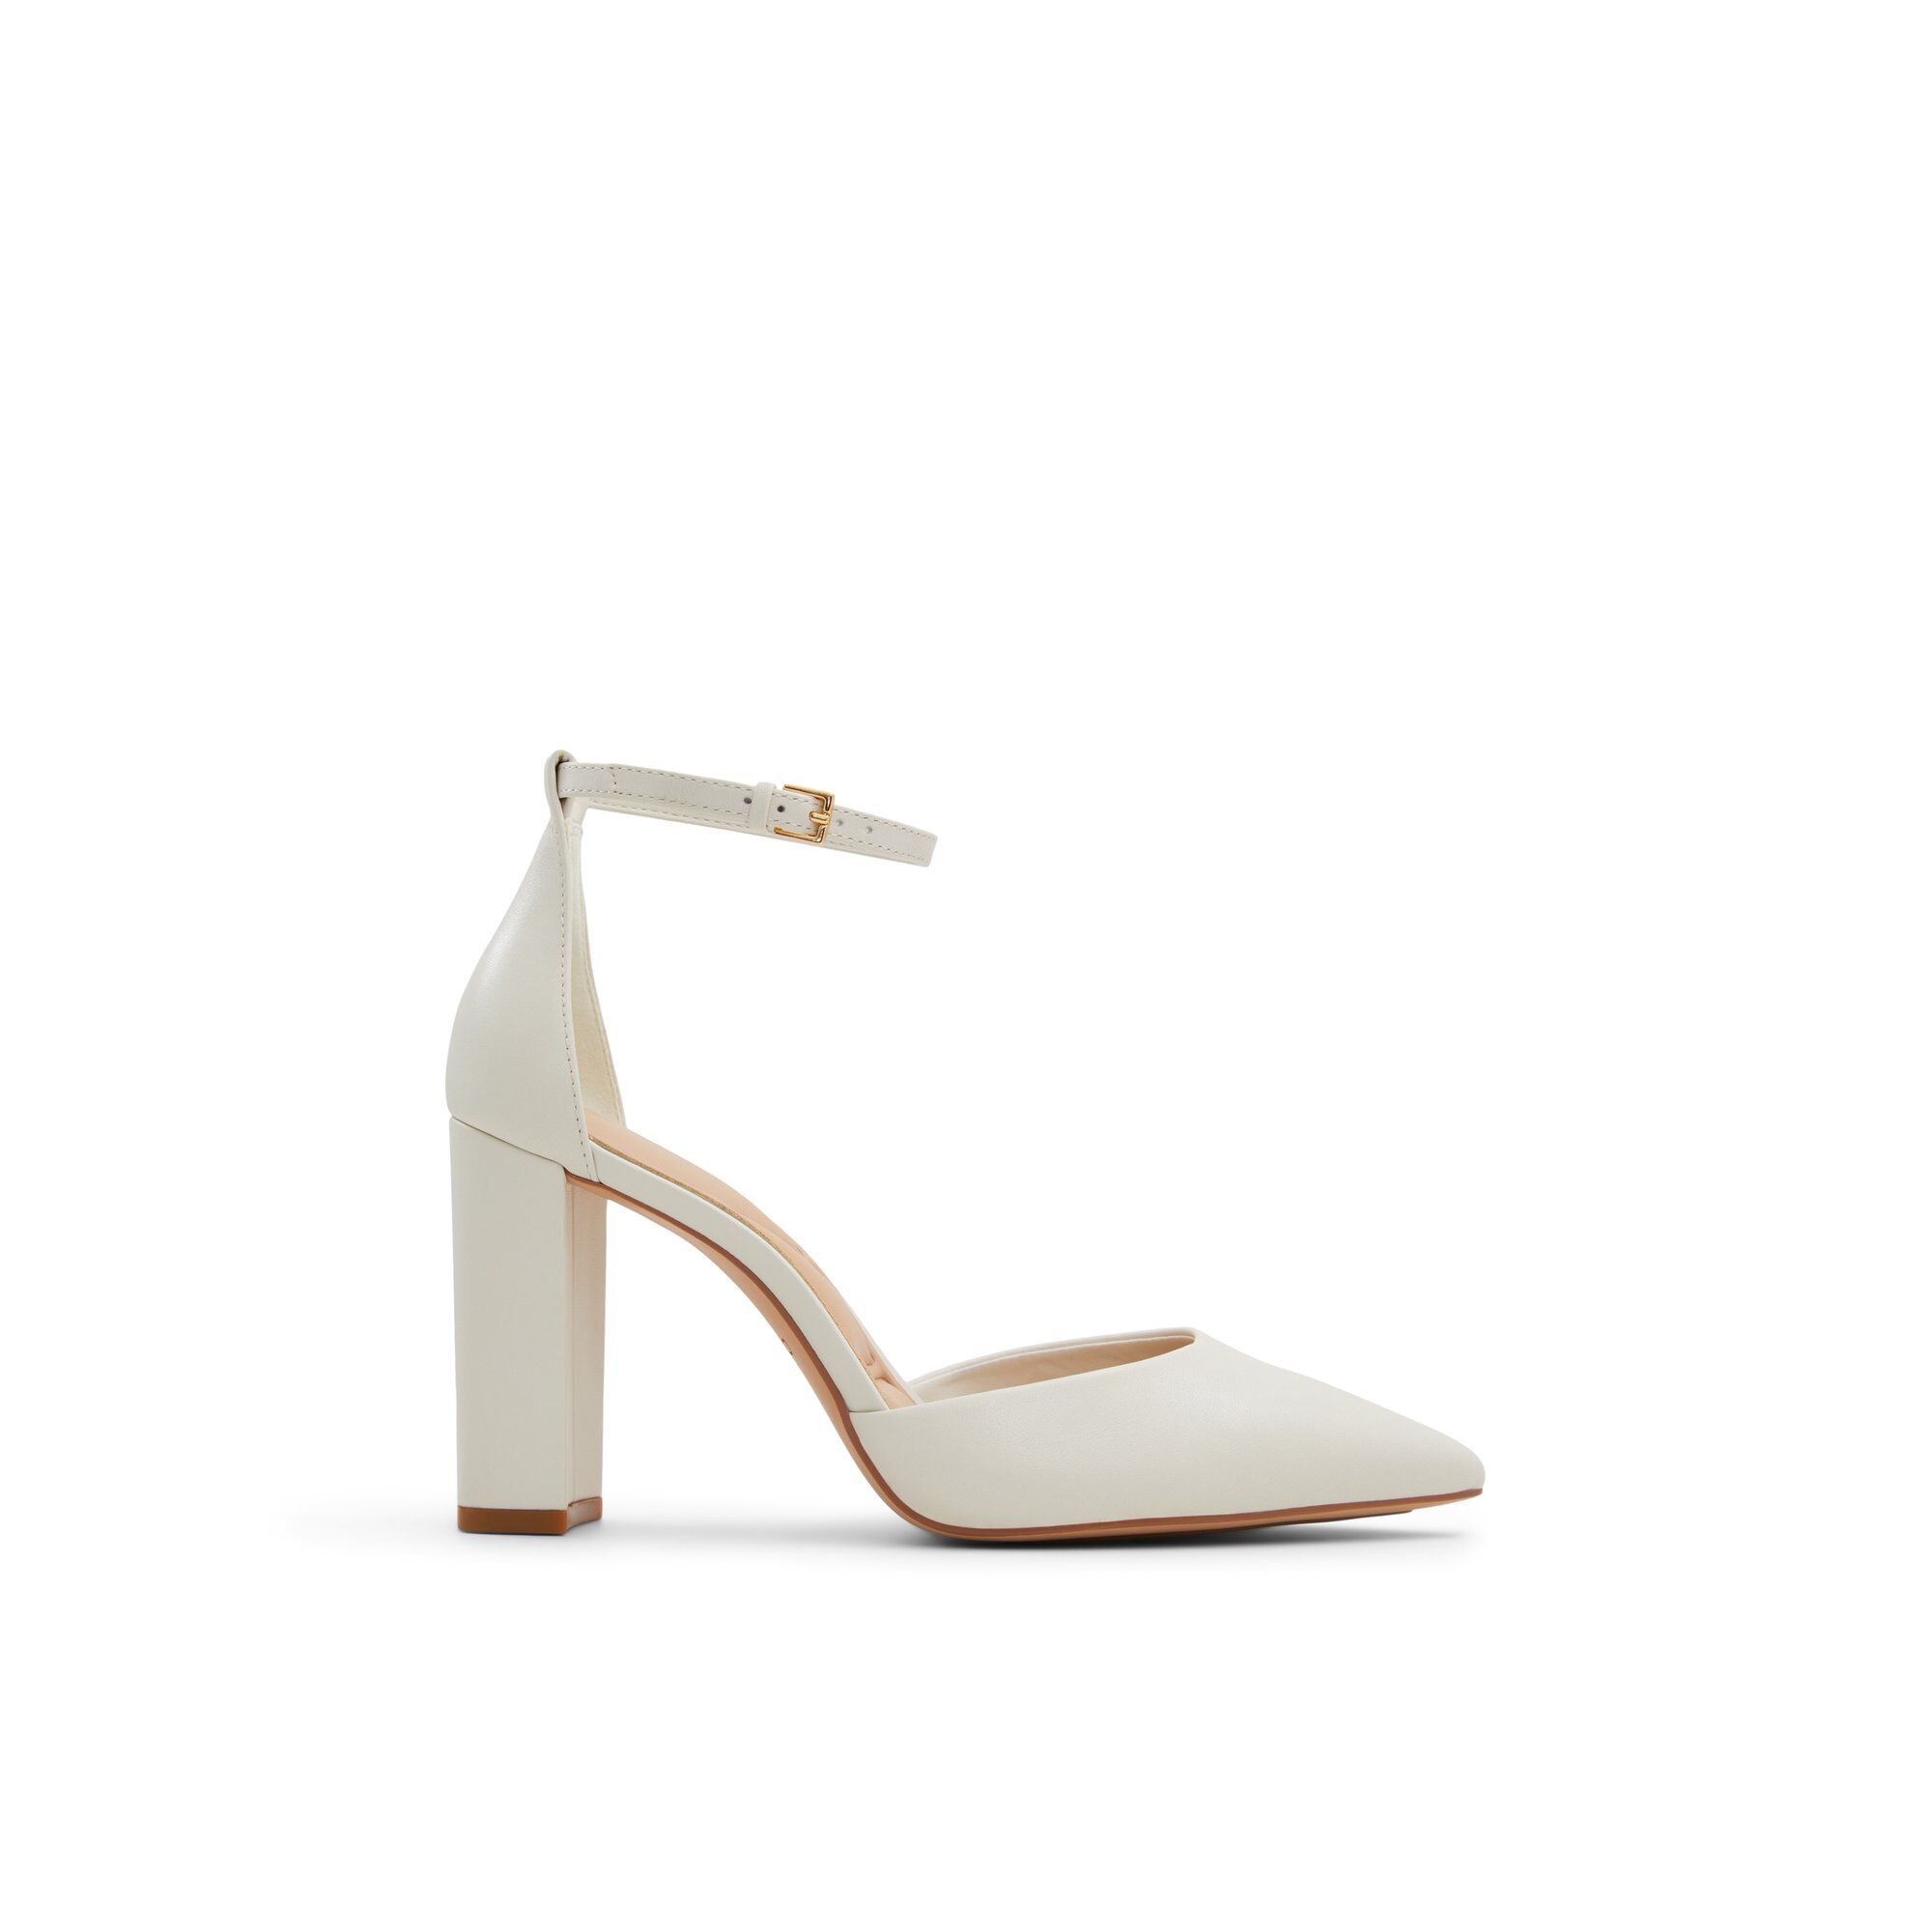 ALDO Faith - Women's Strappy Heel - White, Size 6.5